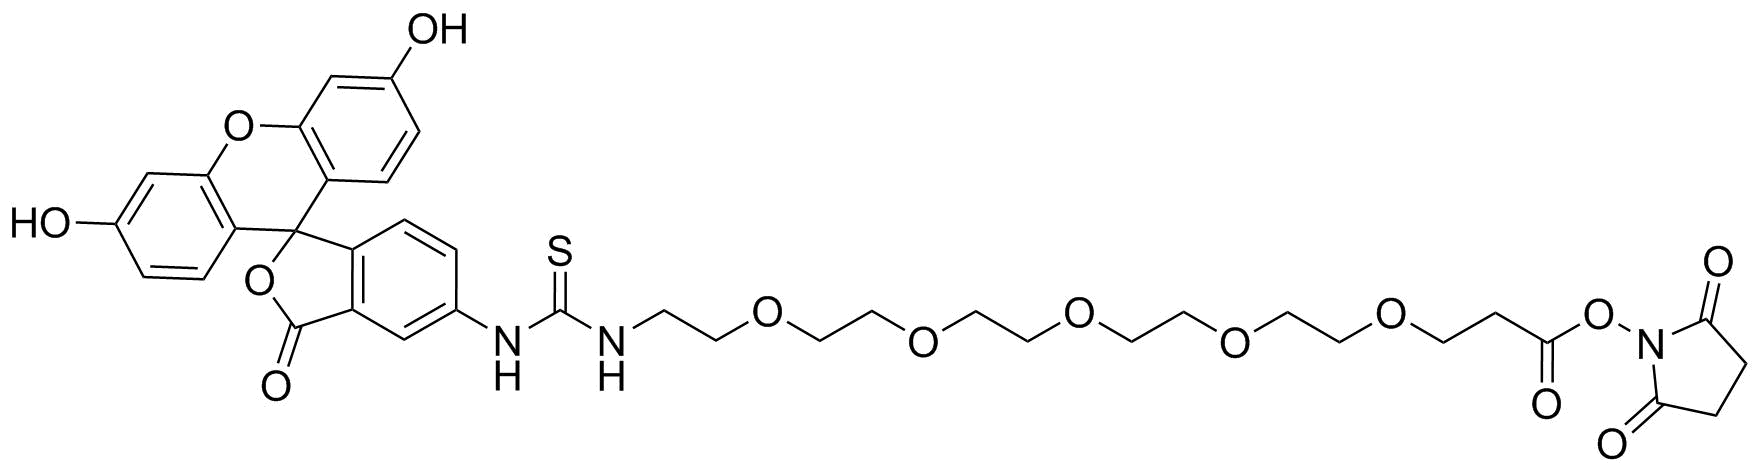 Fluorescein-PEG5-NHS ester